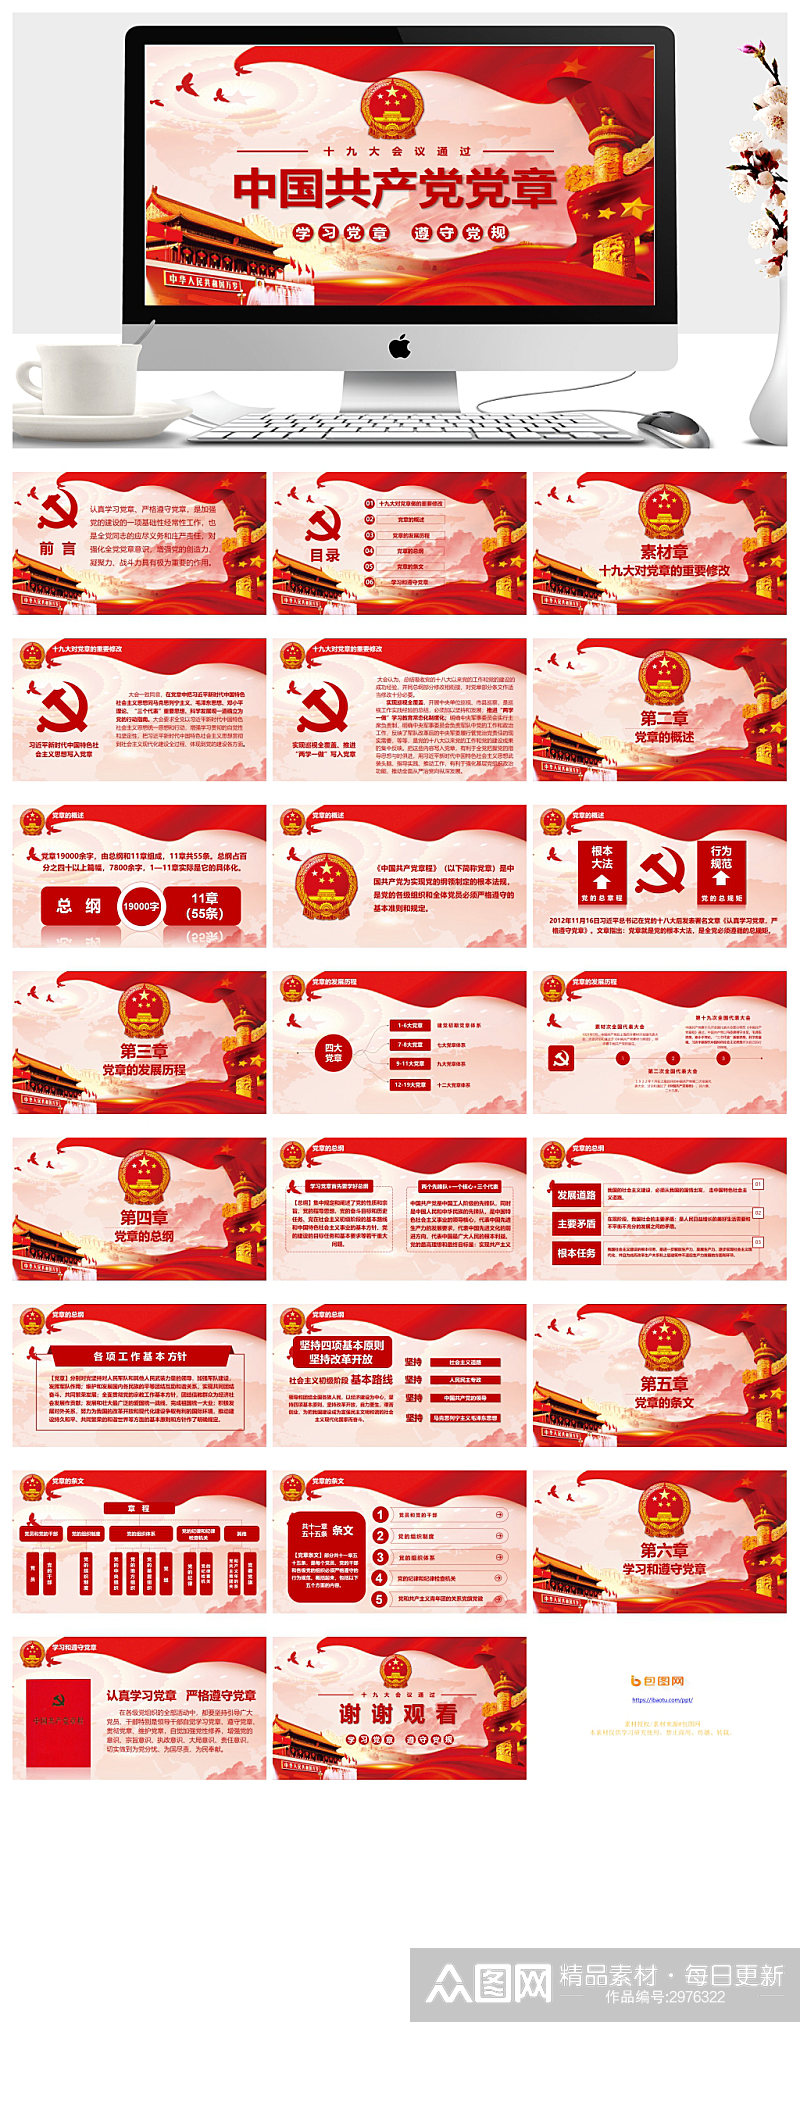 中国共产党党章PPT模板素材